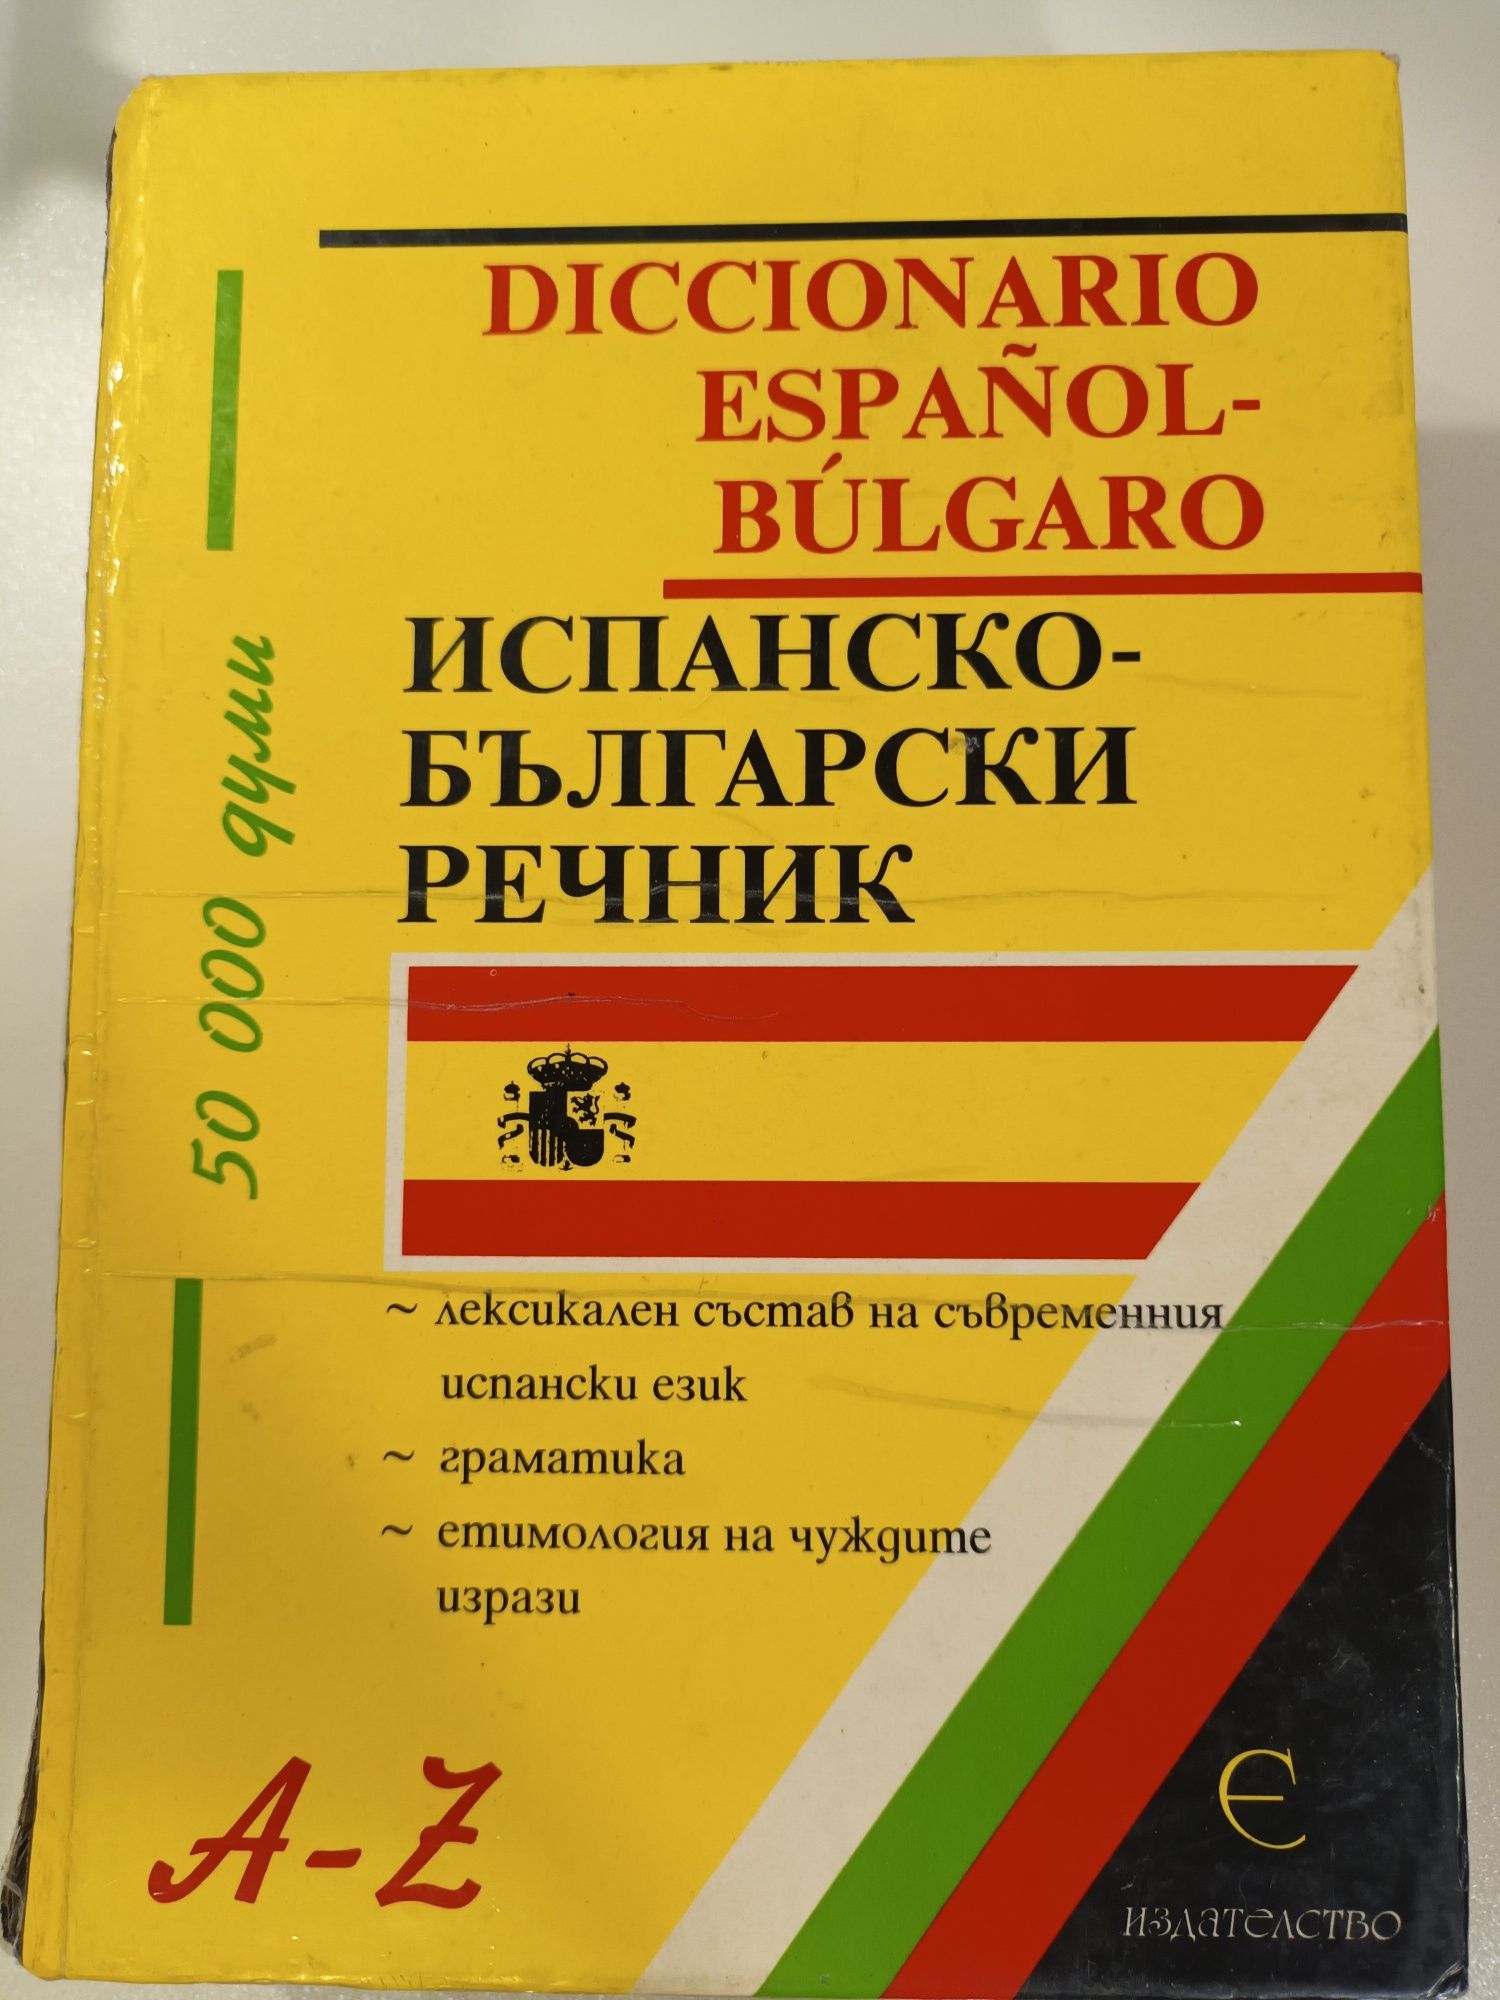 Испанско-български речник 50 000думи -14лв